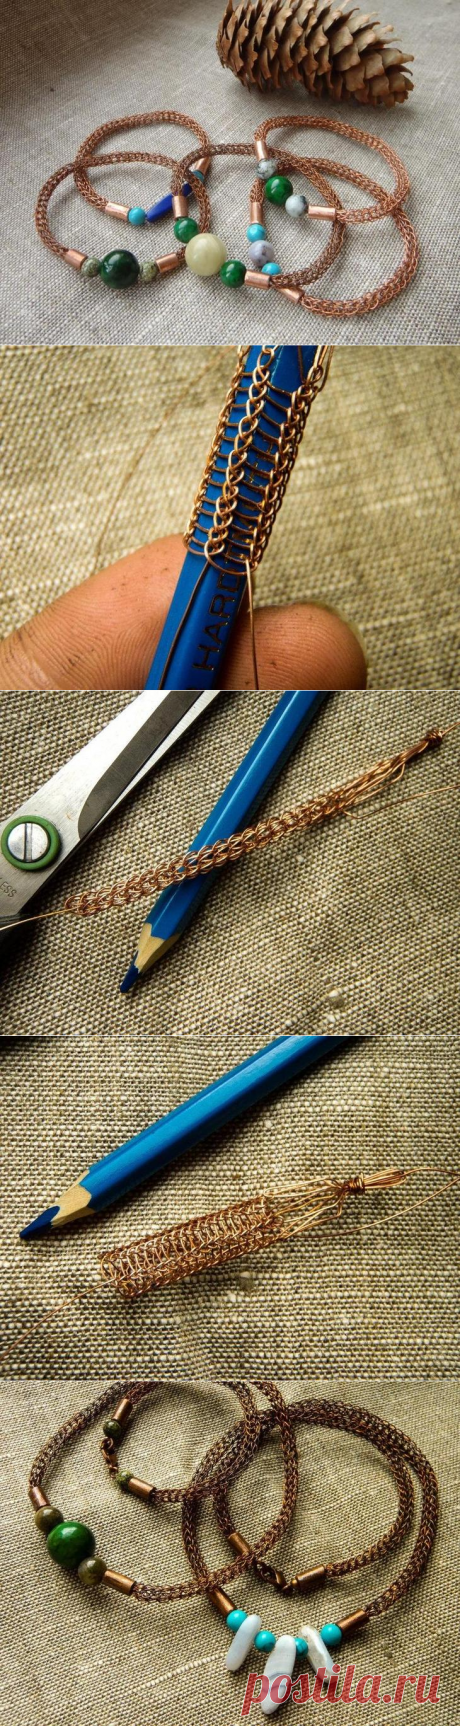 Плетение цепочки в технике viking knit